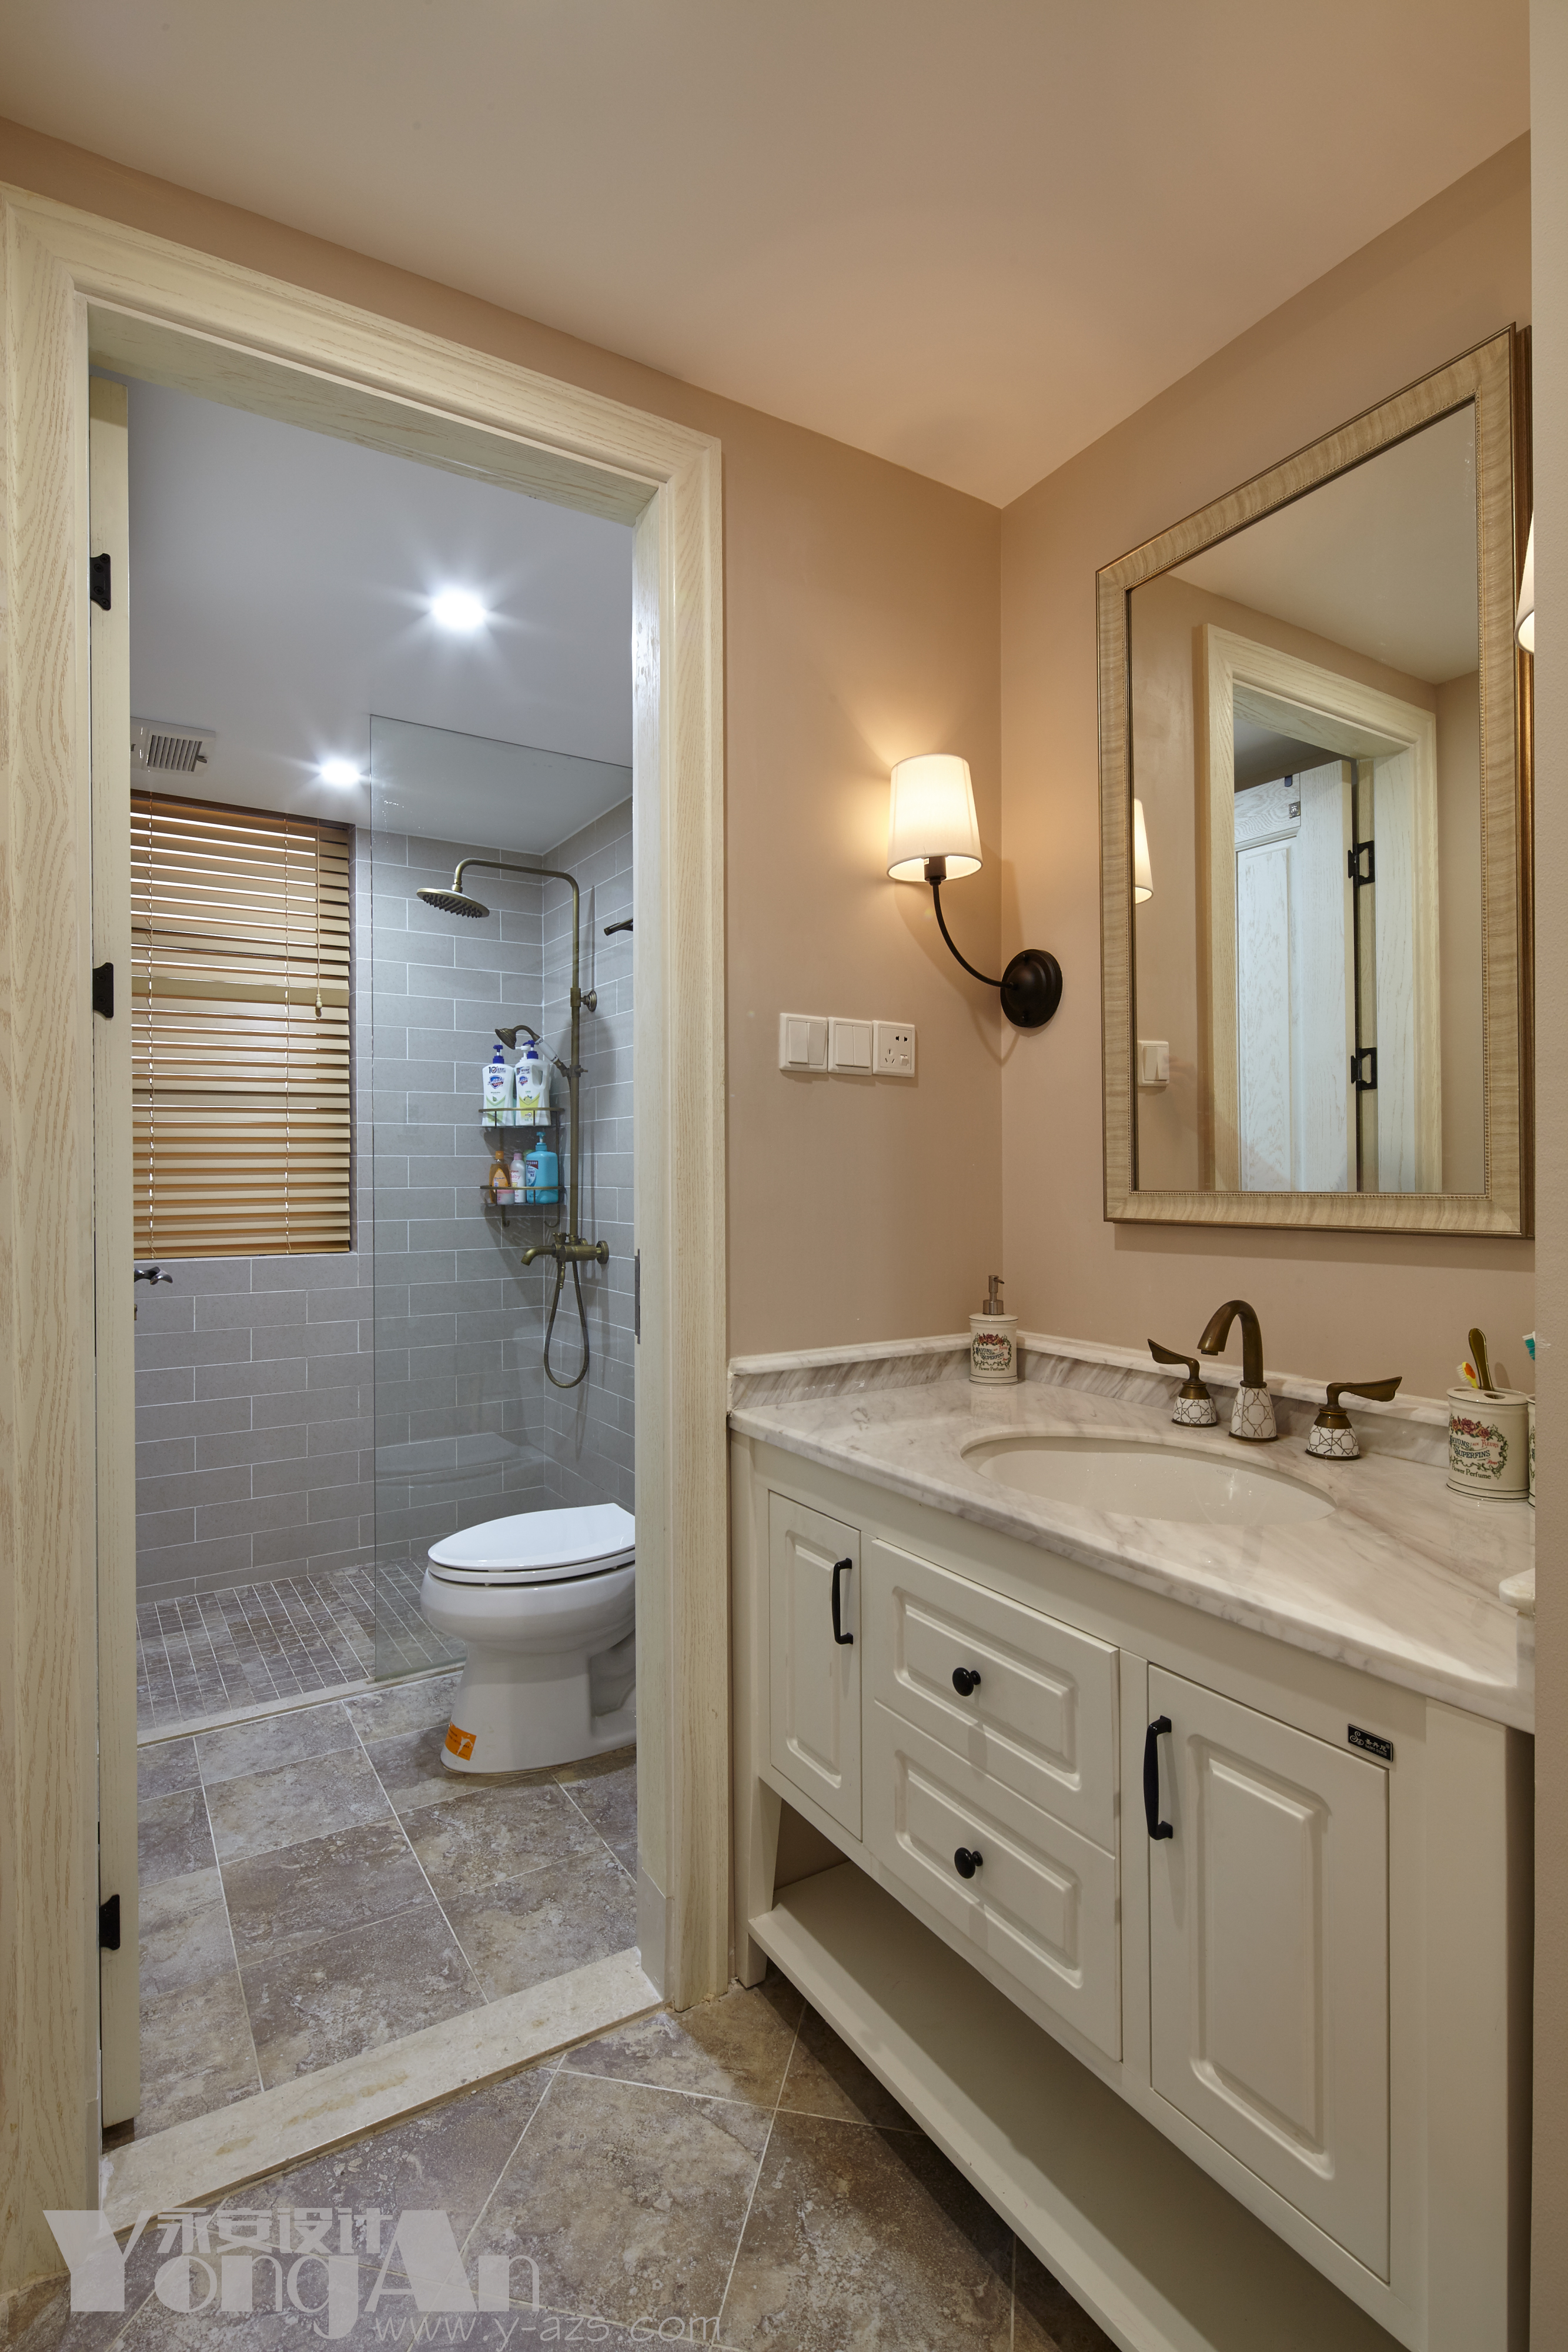 公卫 卫生间 浴室 深圳永安设计 美式 设计